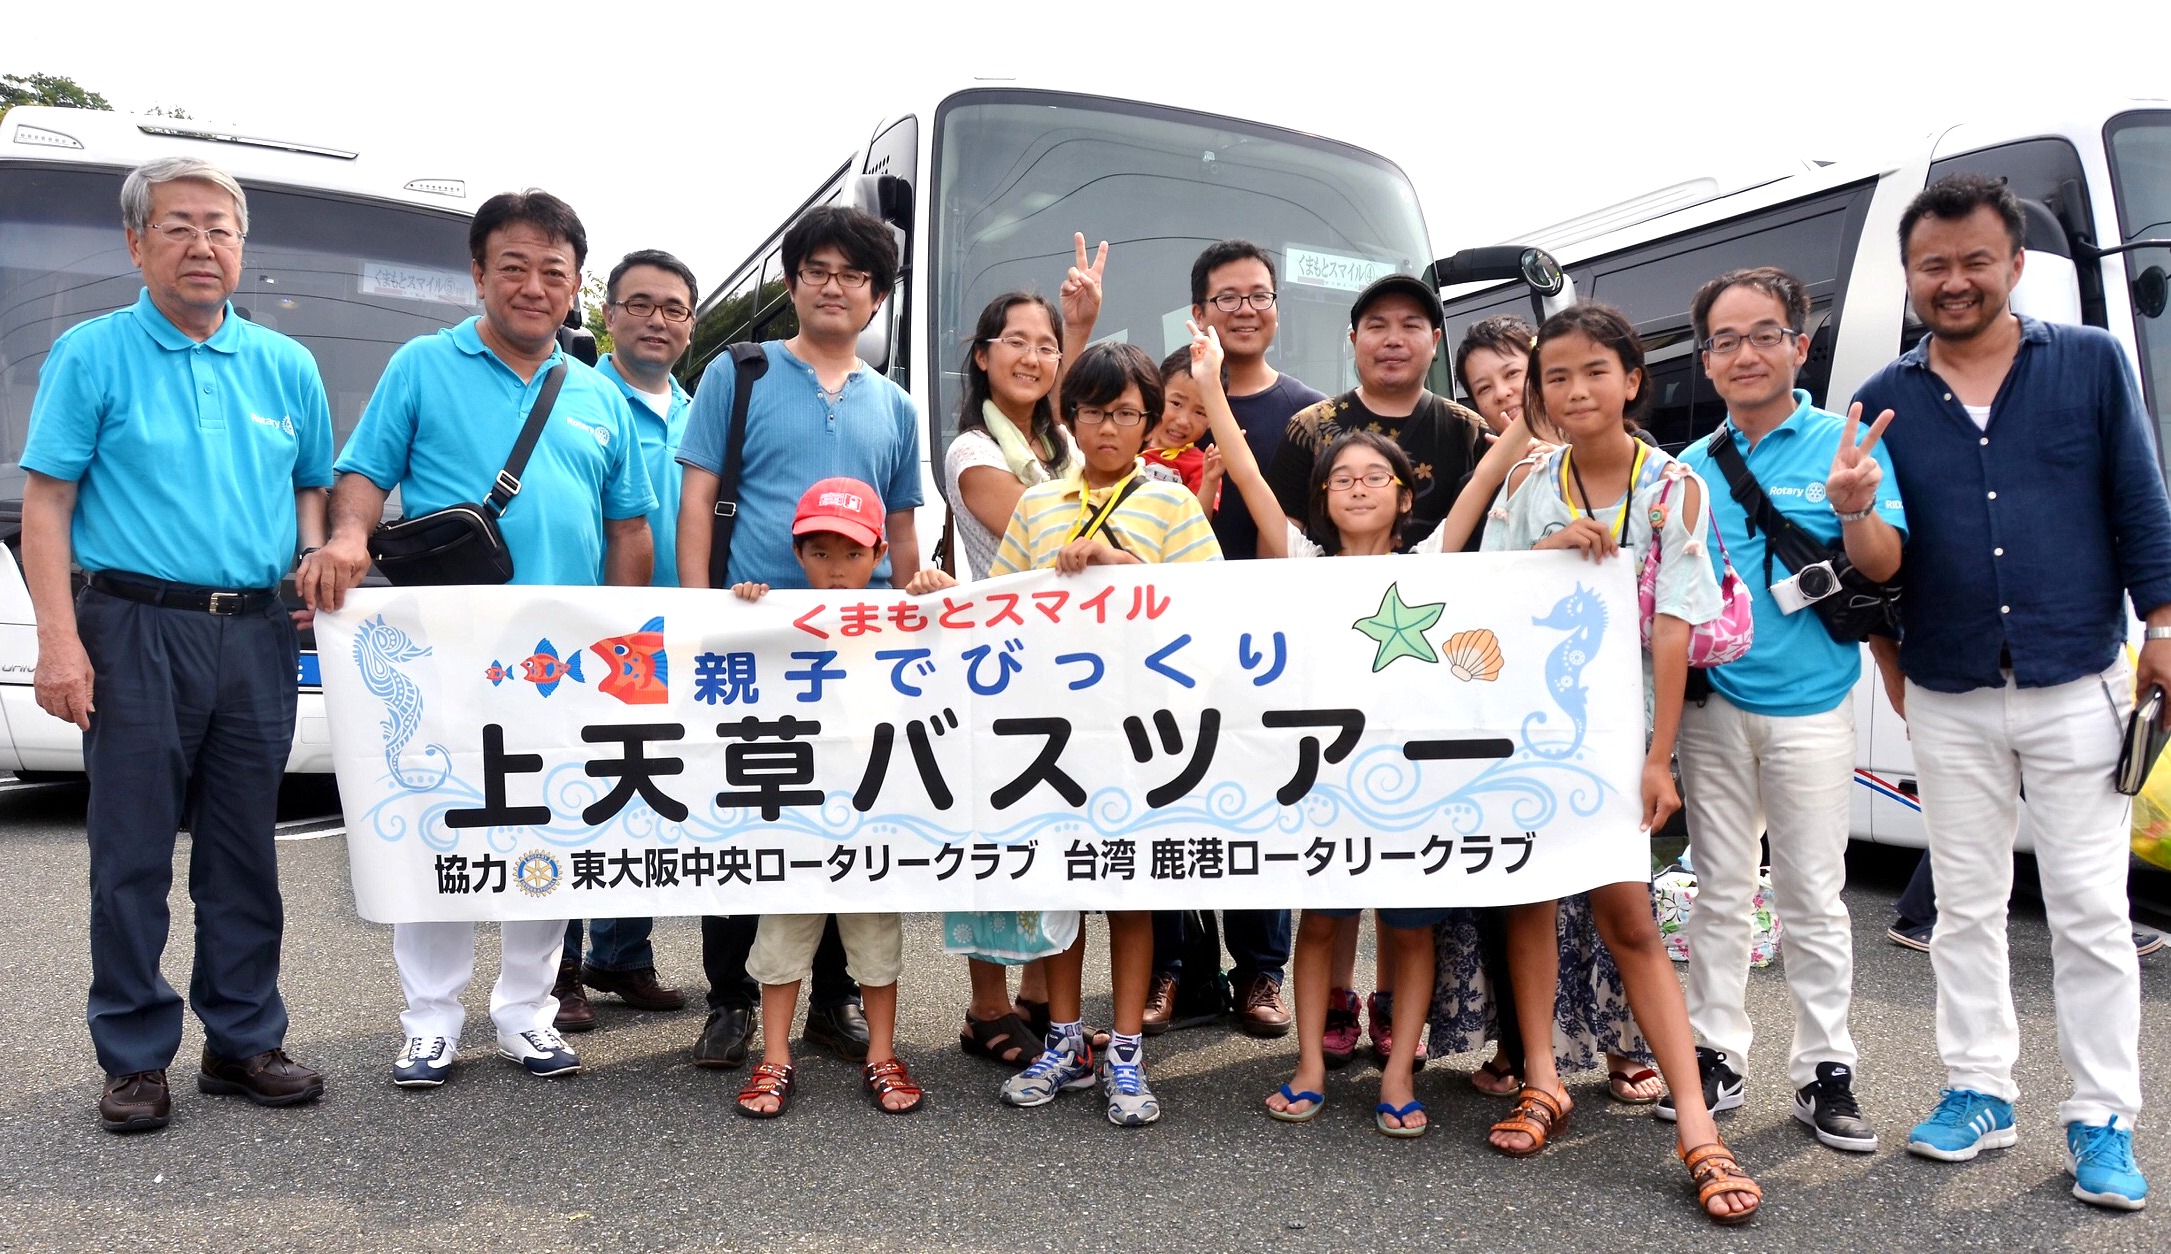 熊本被災地訪問・くまもとスマイルギョギョギョなバスツアー報告